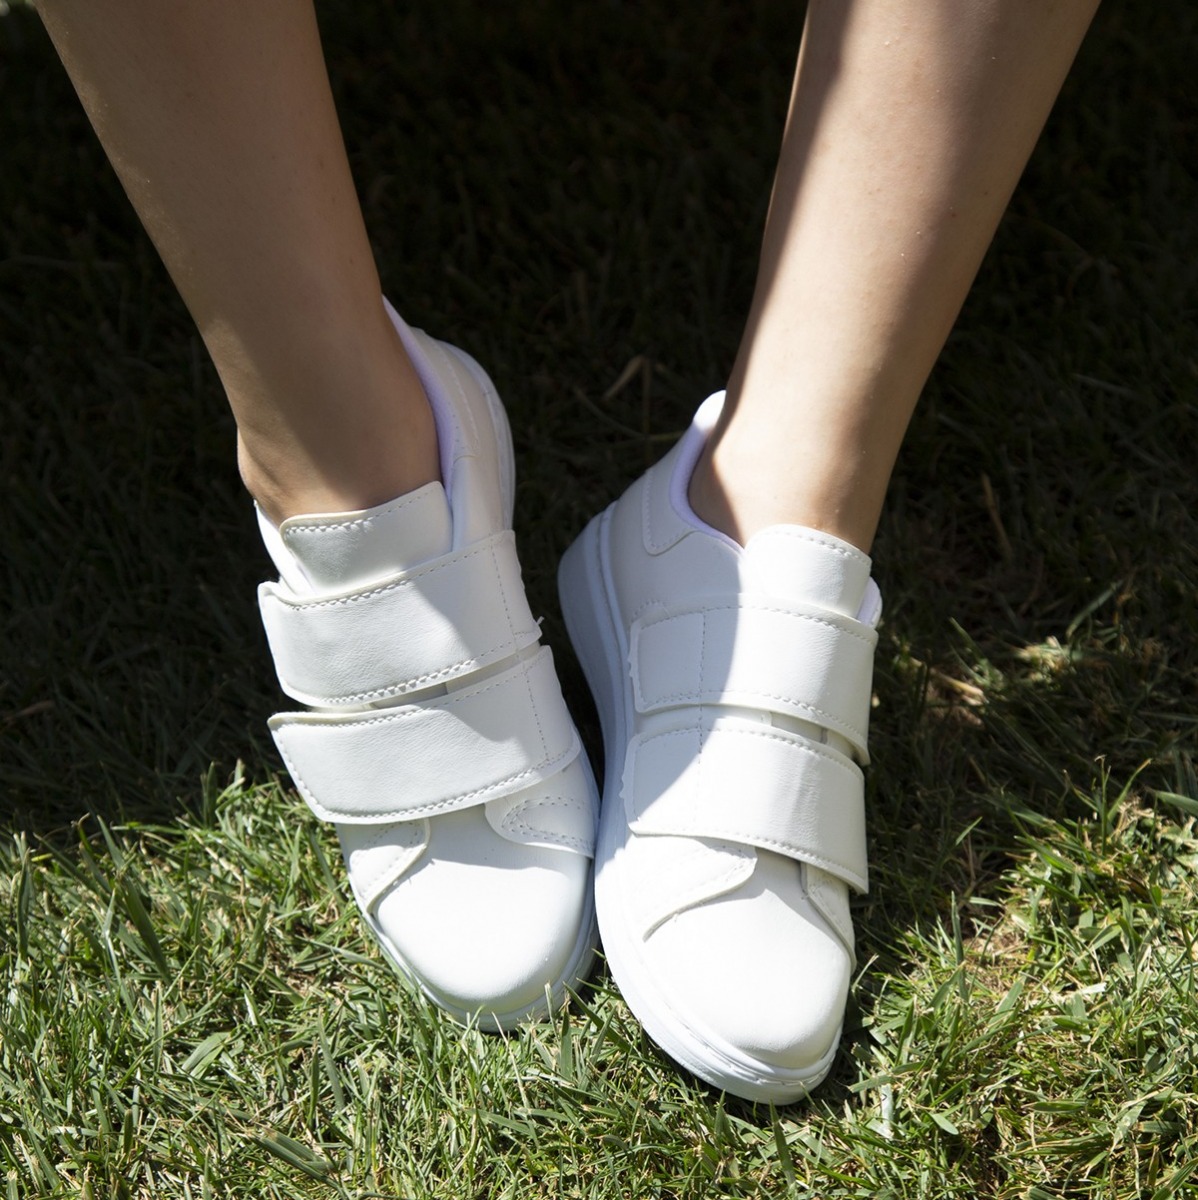 Flo Beyaz-Beyaz Kadın Cırtlı Spor Ayakkabı 4000-19-101003. 6